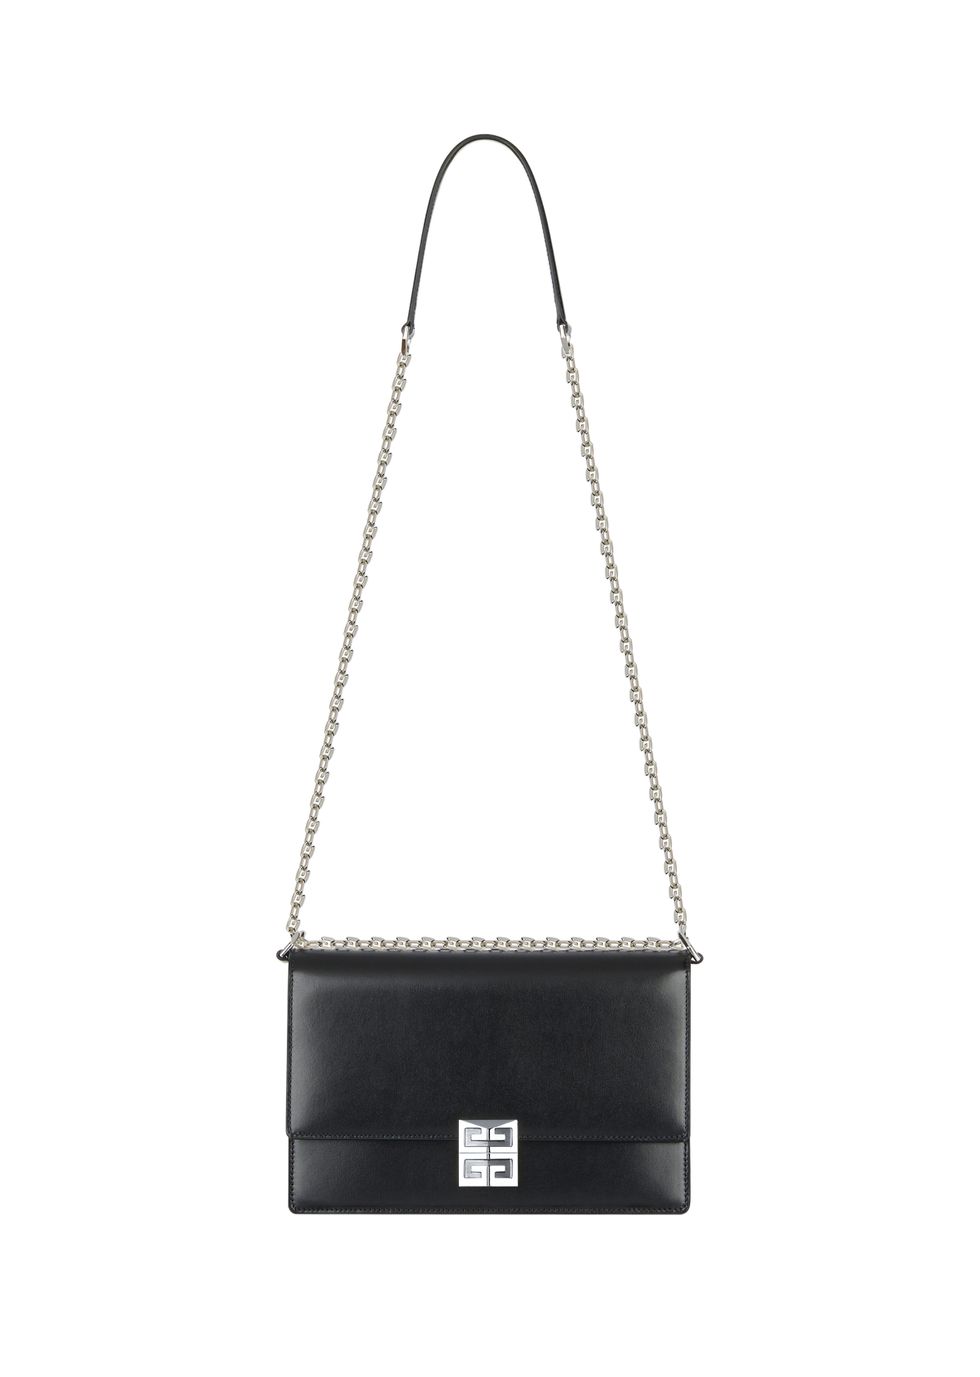 Givenchy Debuts New 4G Handbag for Summer 2021 - PAPER